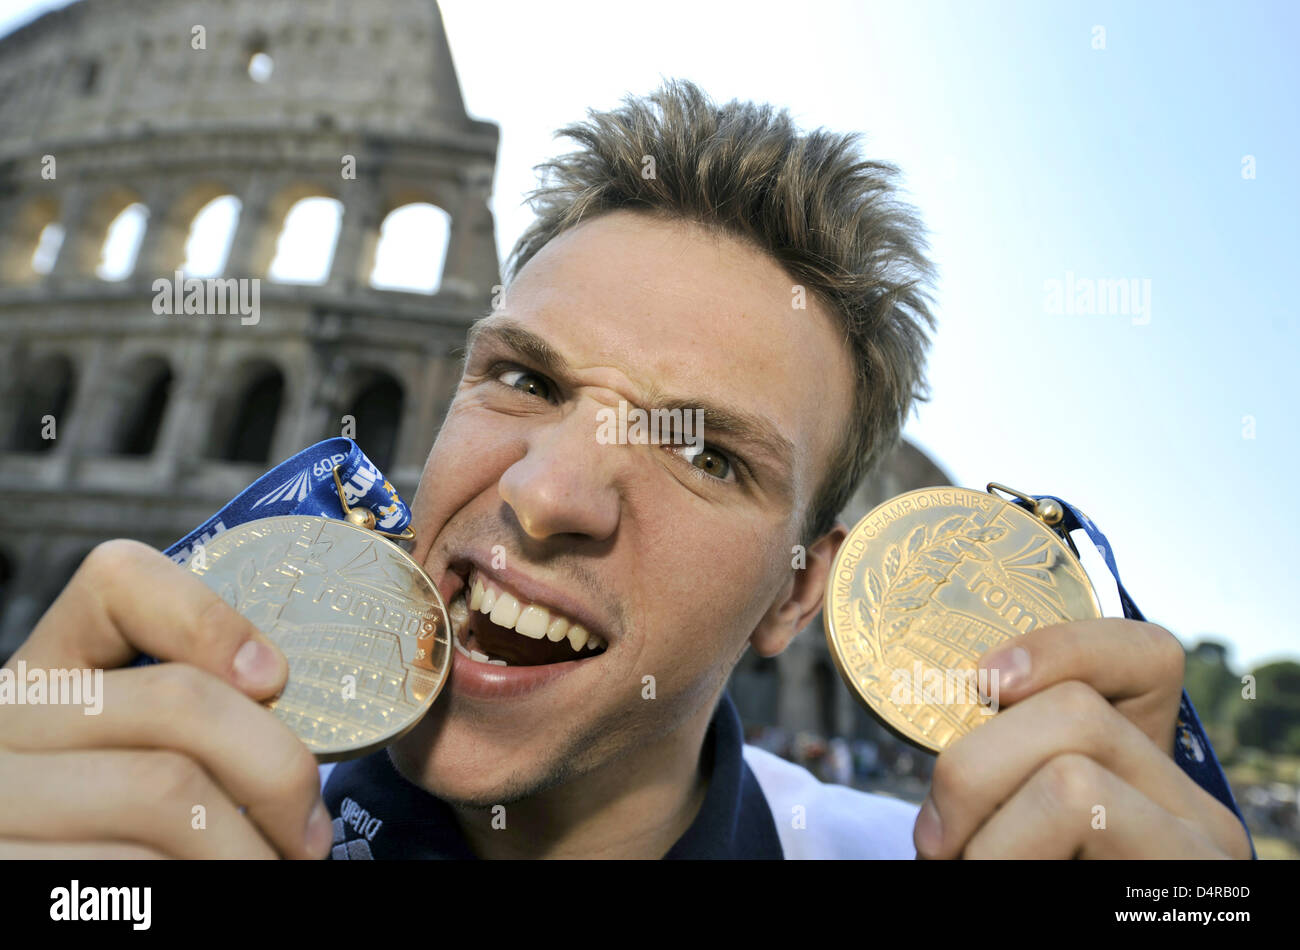 Paul Biedermann, il duplice campione del mondo, mostra il suo oro medaglie per le vittorie nel 200m e 400m Freestyle gare nei Campionati del Mondo di nuoto FINA di fronte al Colosseo a Roma, Italia, 30 luglio 2009. Foto: BERND THISSEN Foto Stock